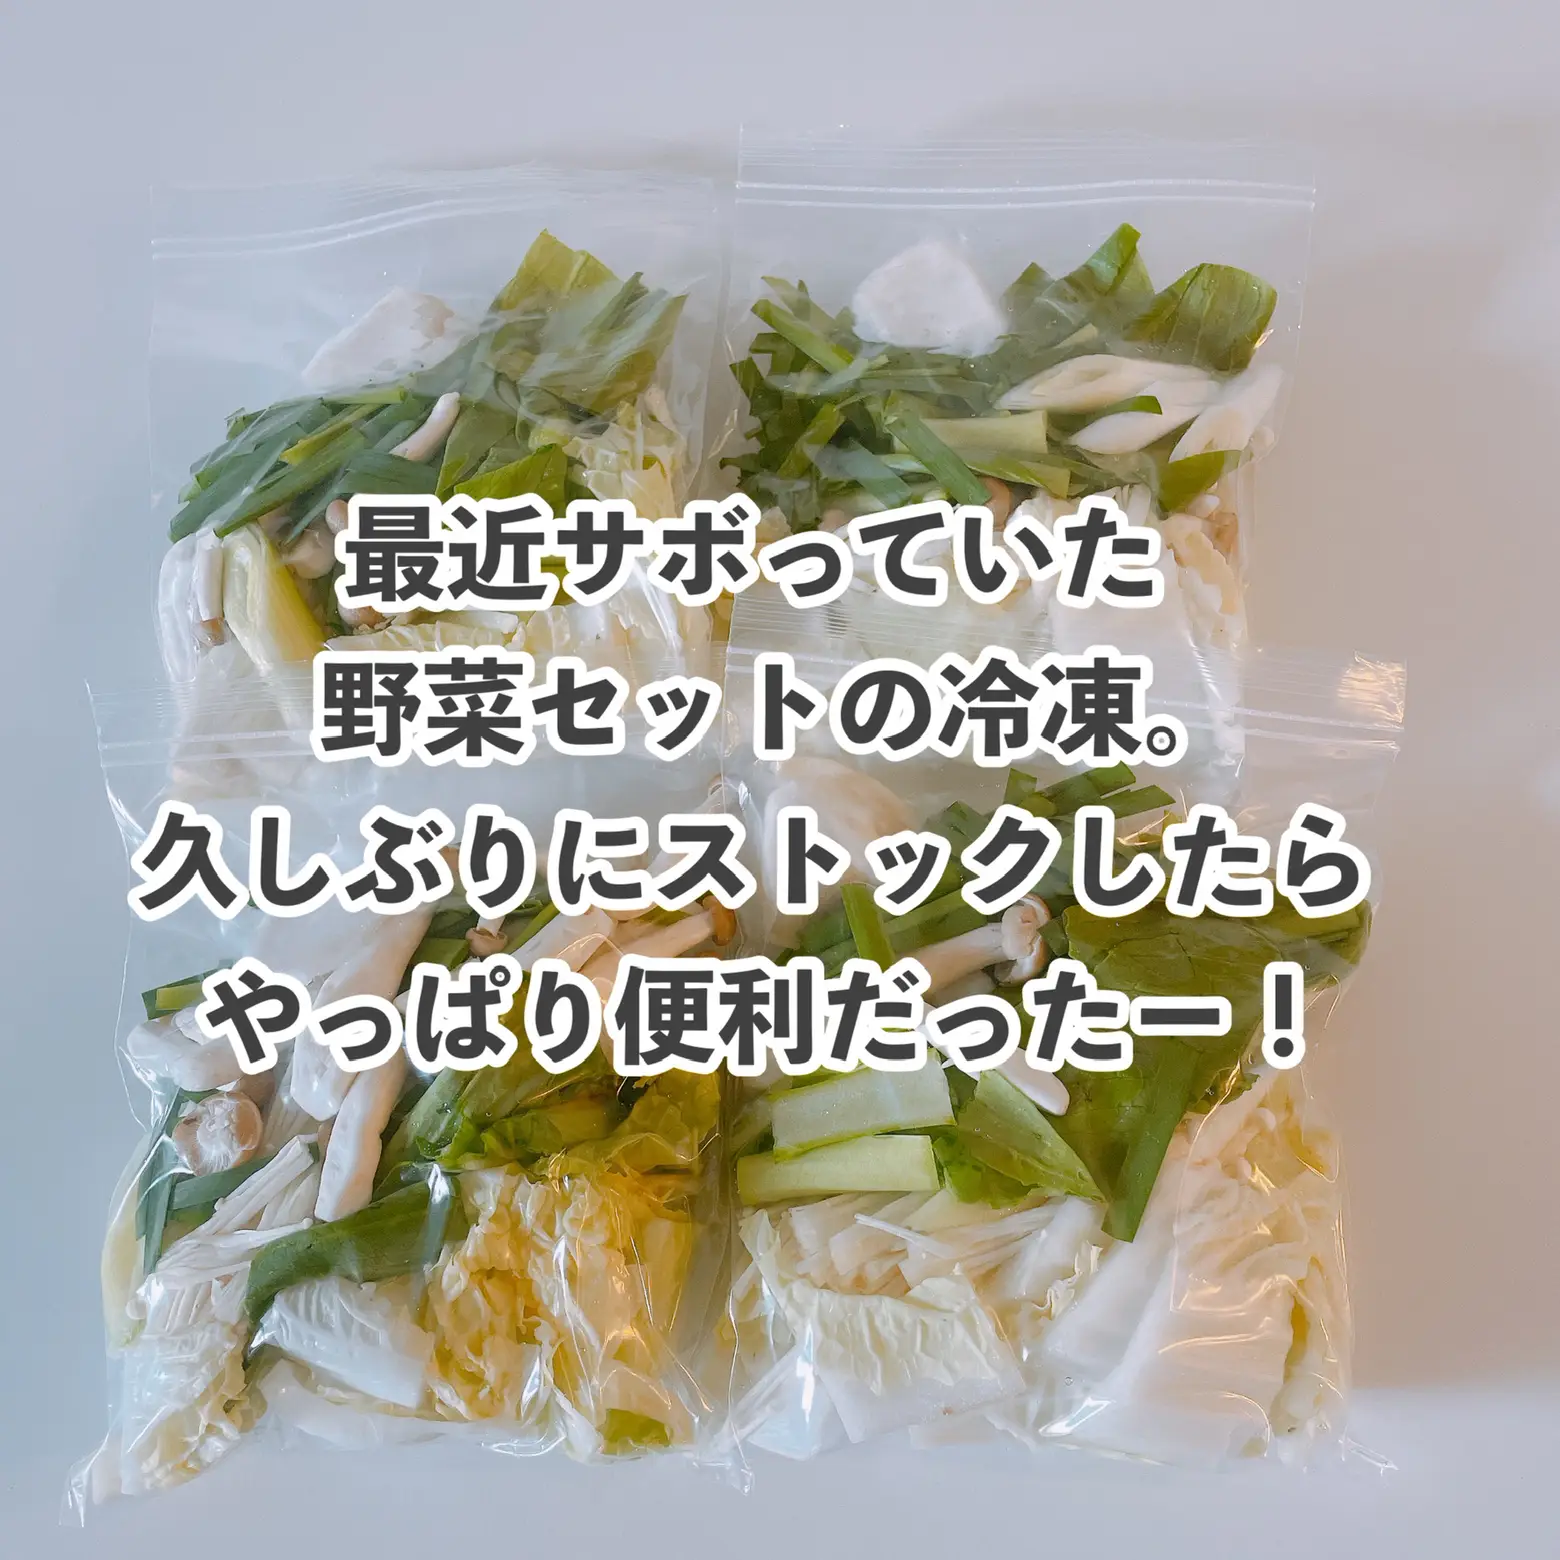 冷凍野菜セットが便利の画像 (2枚目)